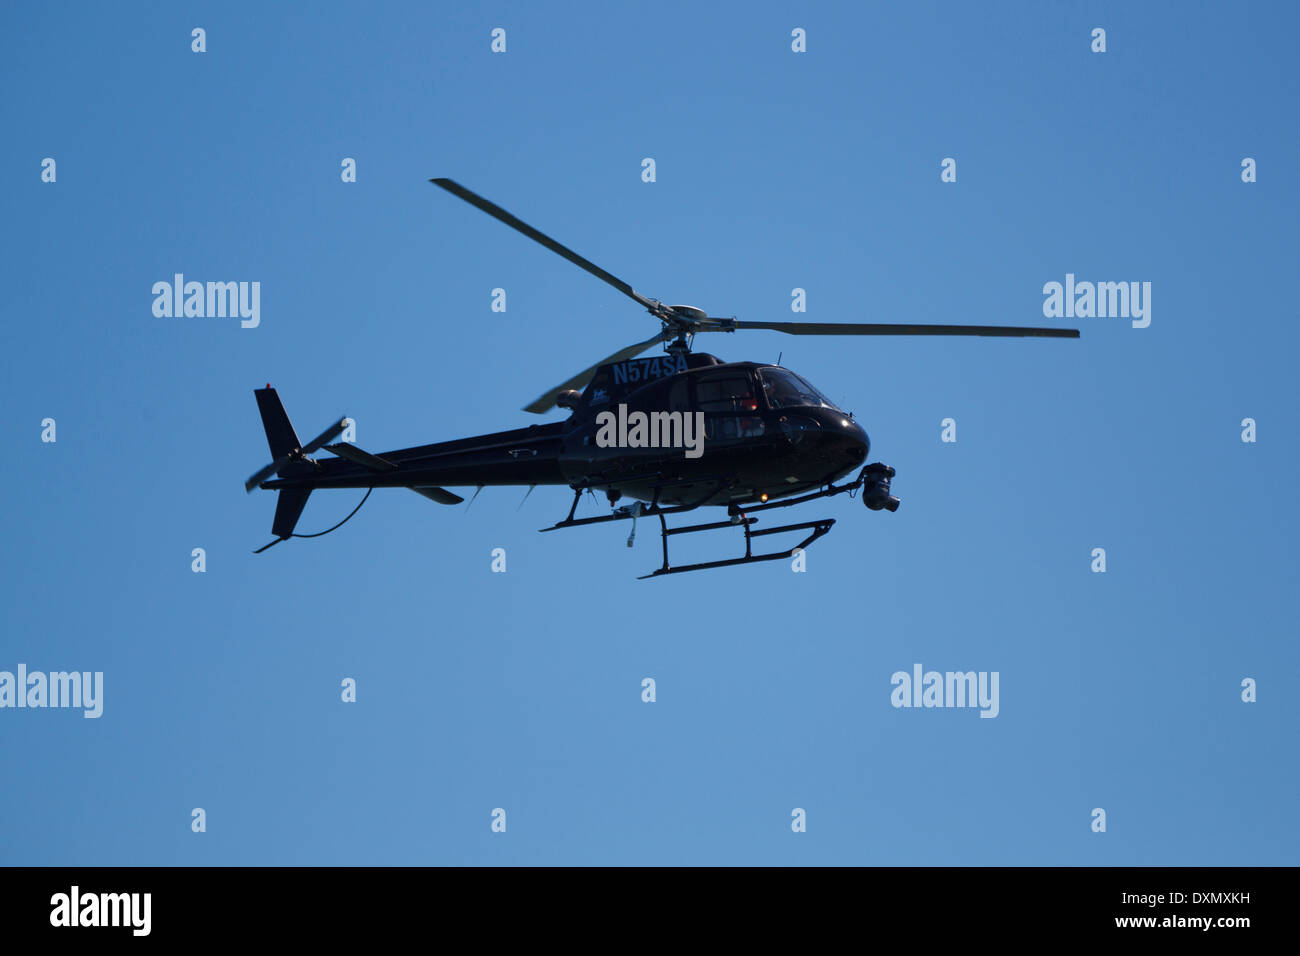 Elicottero nero immagini e fotografie stock ad alta risoluzione - Alamy